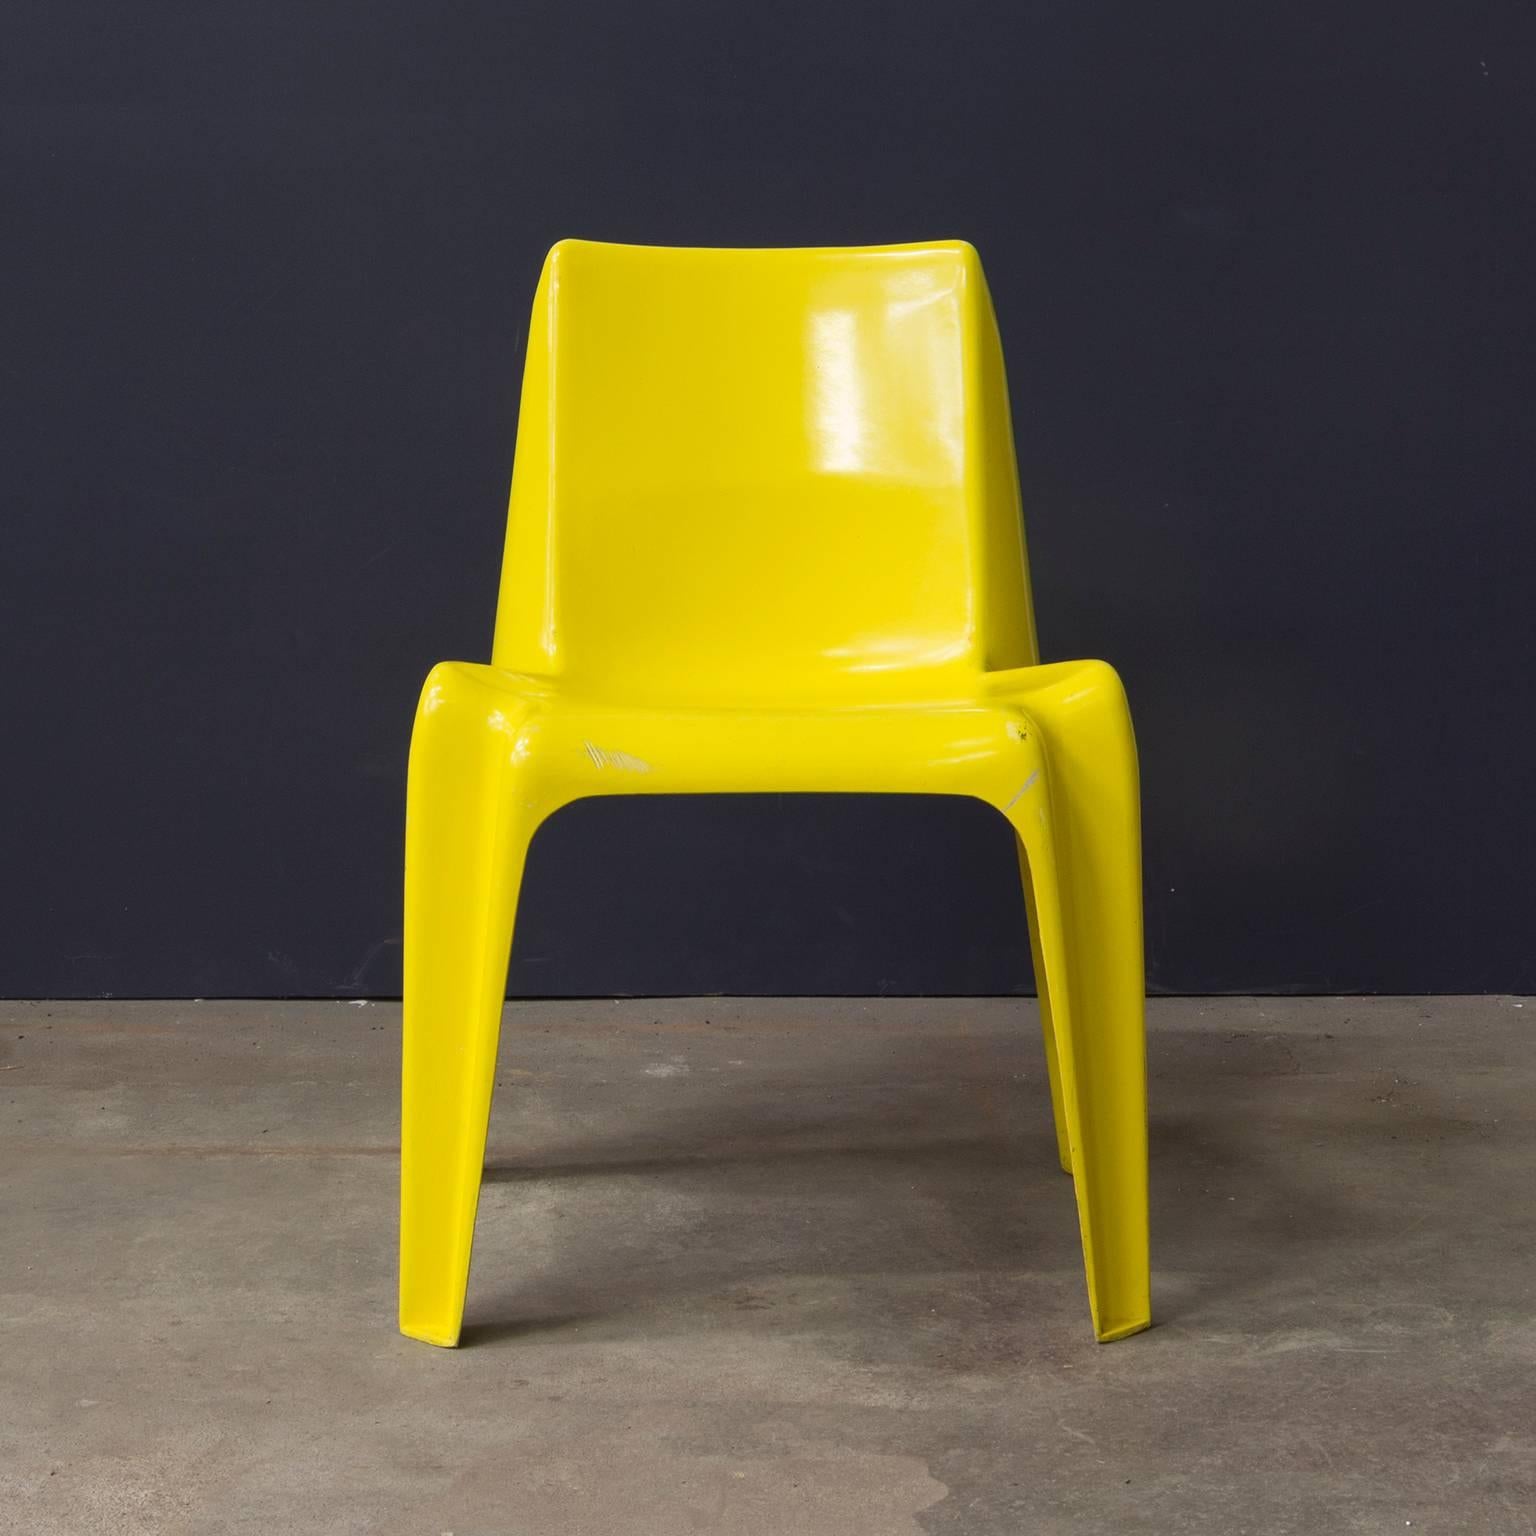 plastic yellow chairs